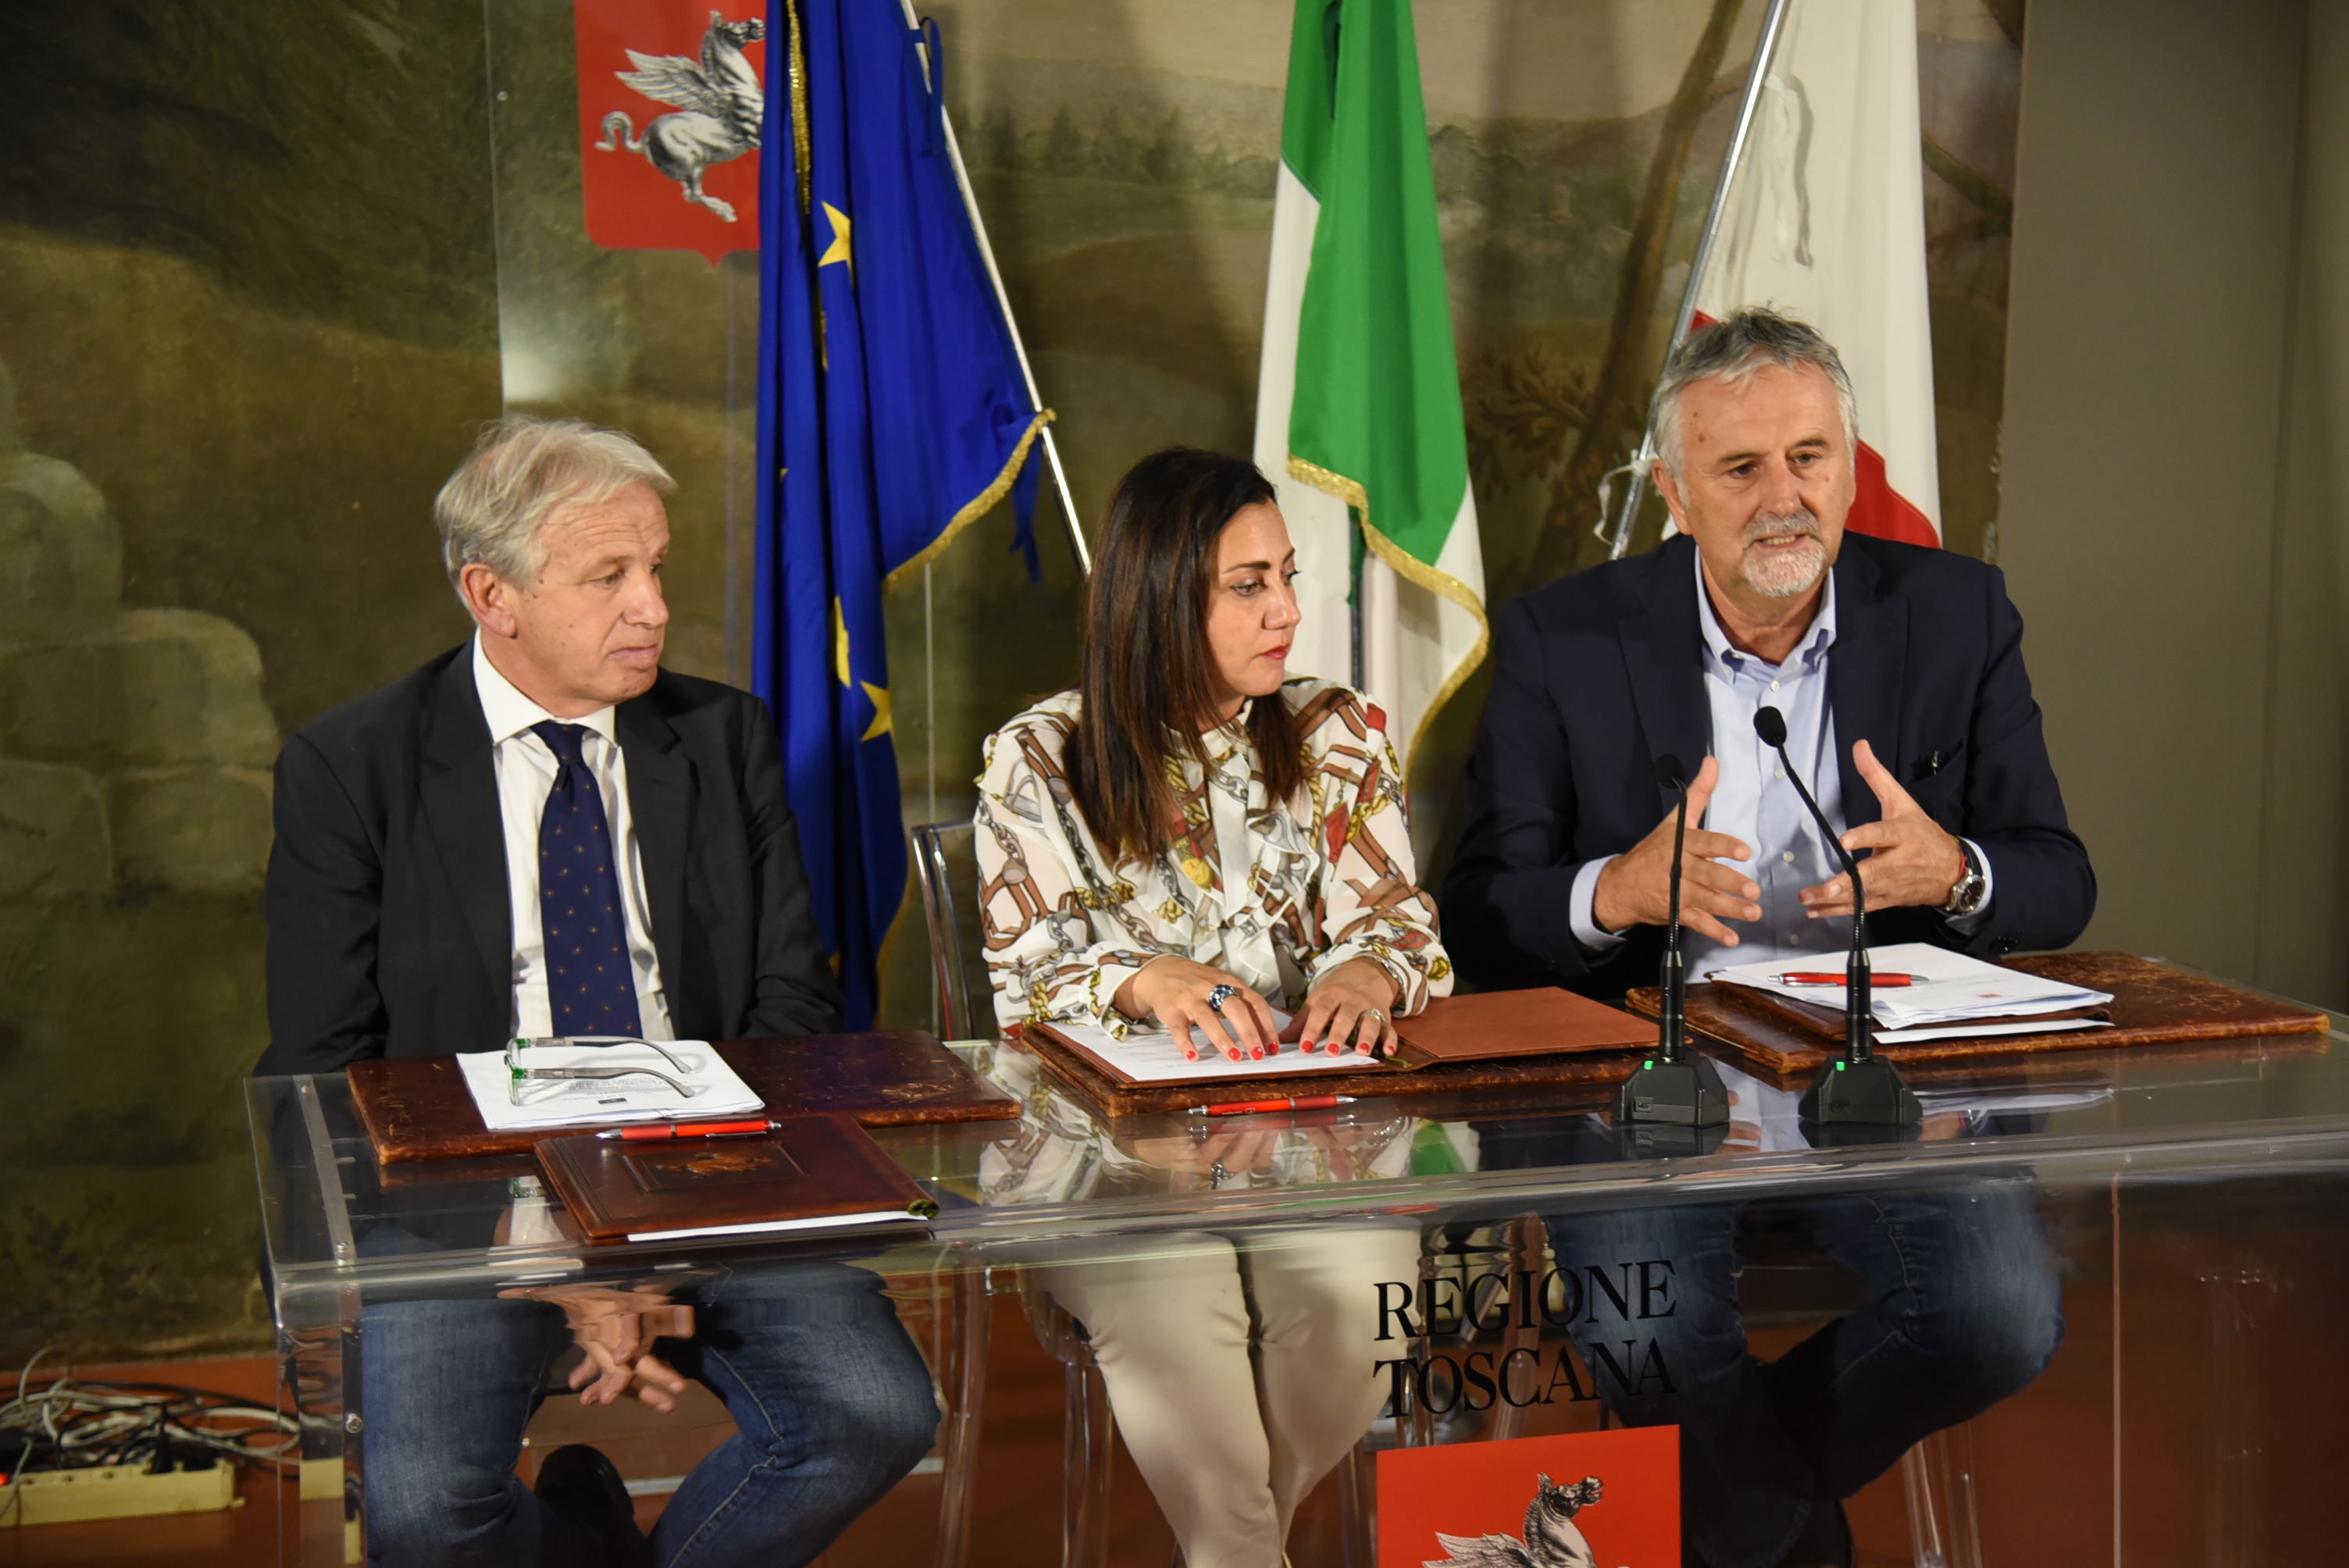 Firmato il protocollo affinché la Valdichiana della bonifica leopoldina entri nei paesaggi storici d’Italia